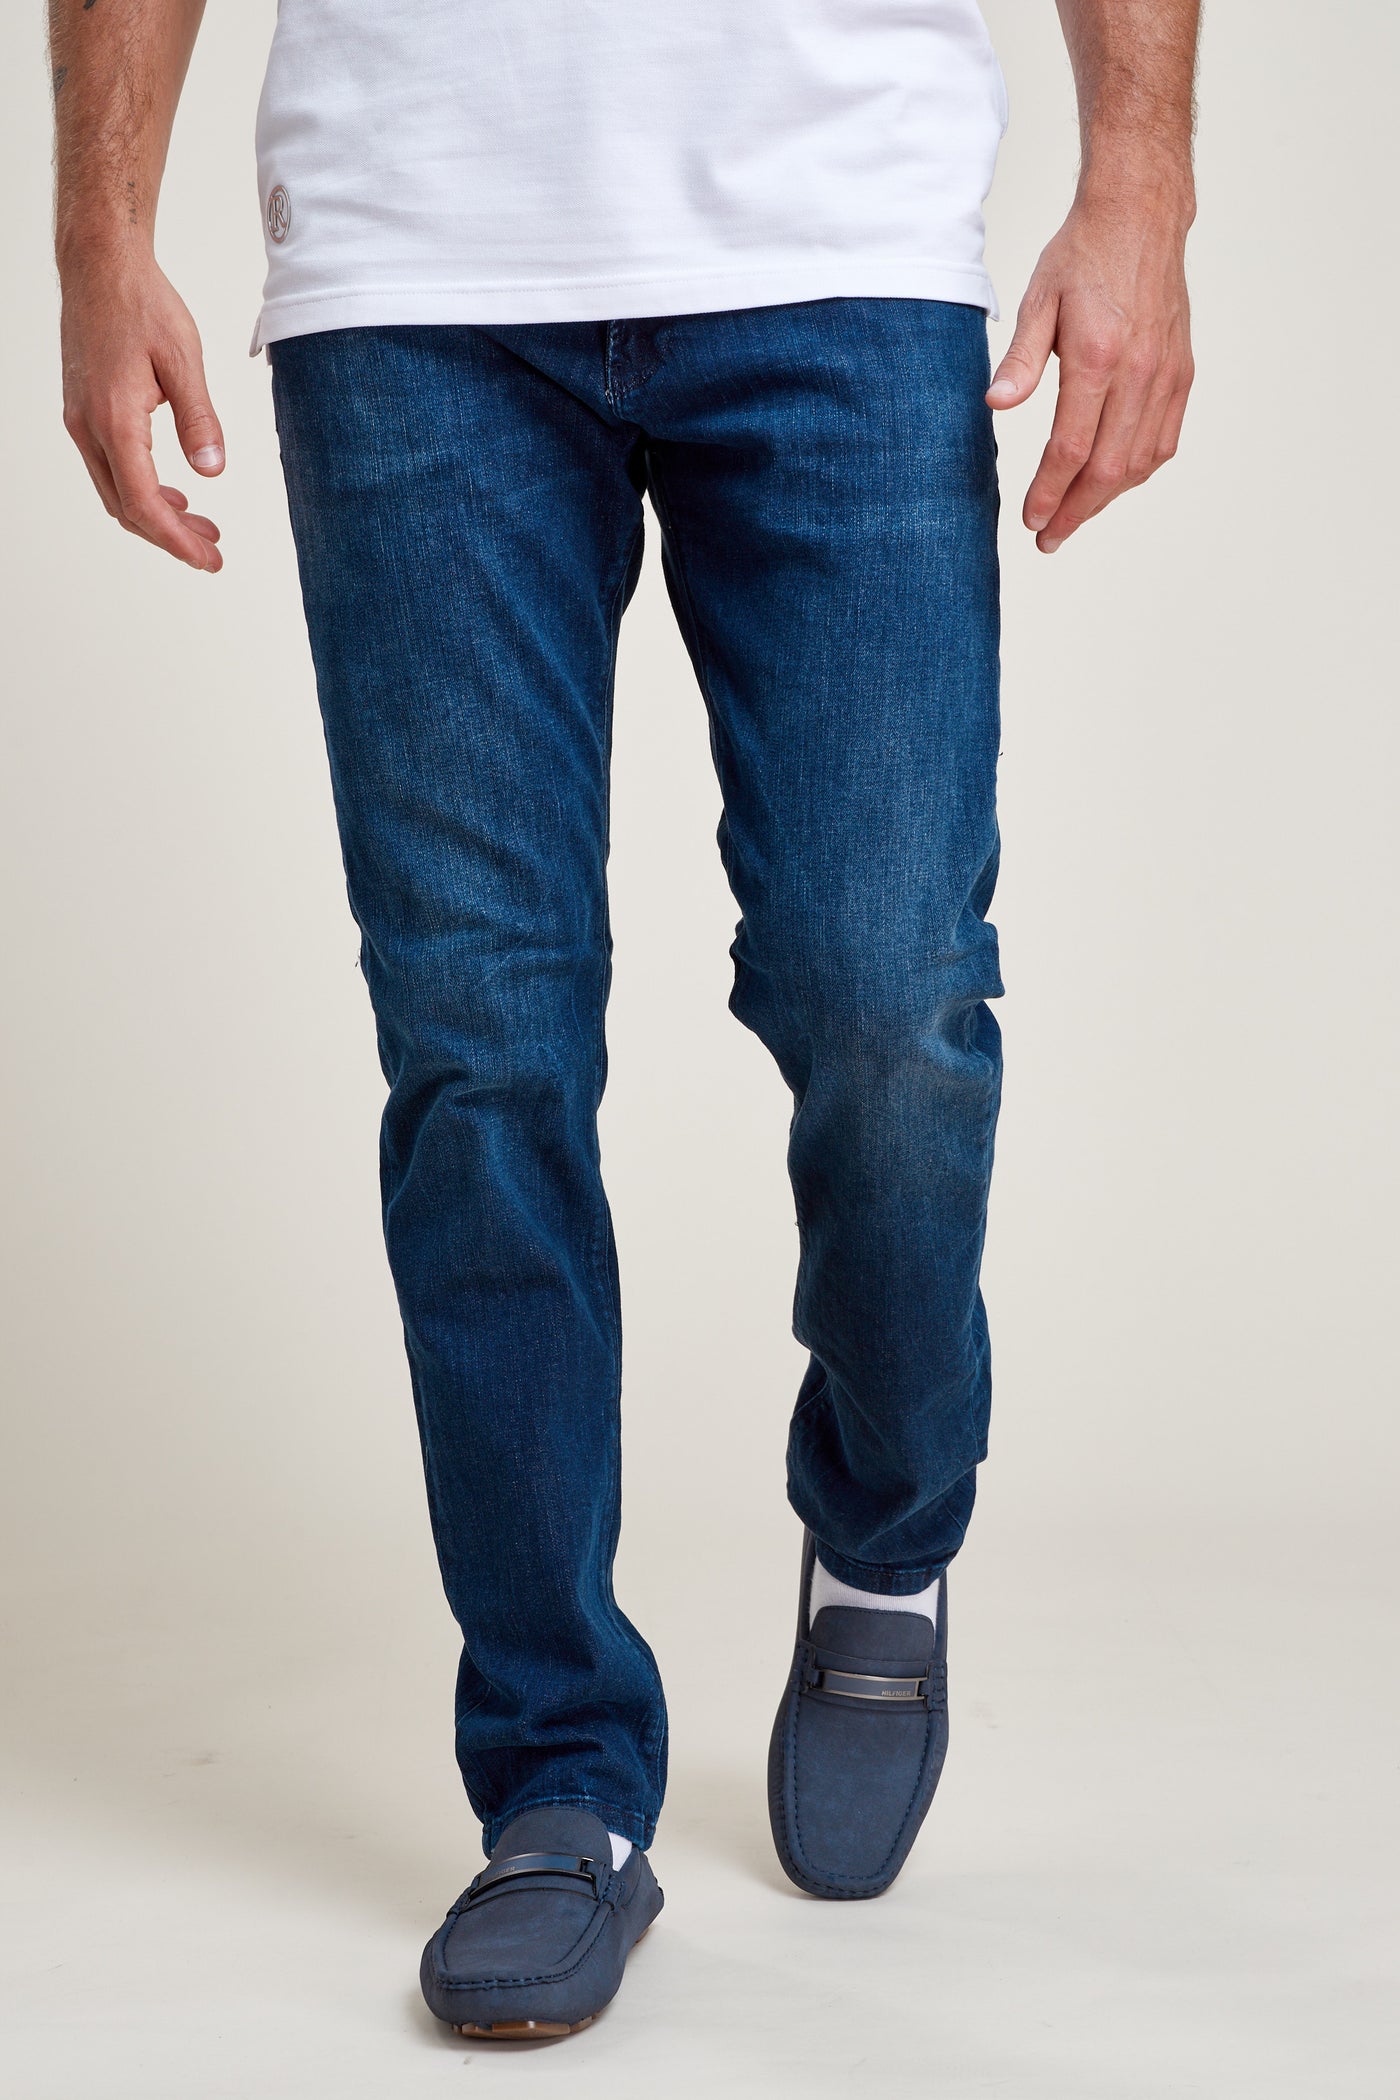 מכנס ג'ינס ריגולר בצבע כחול 1